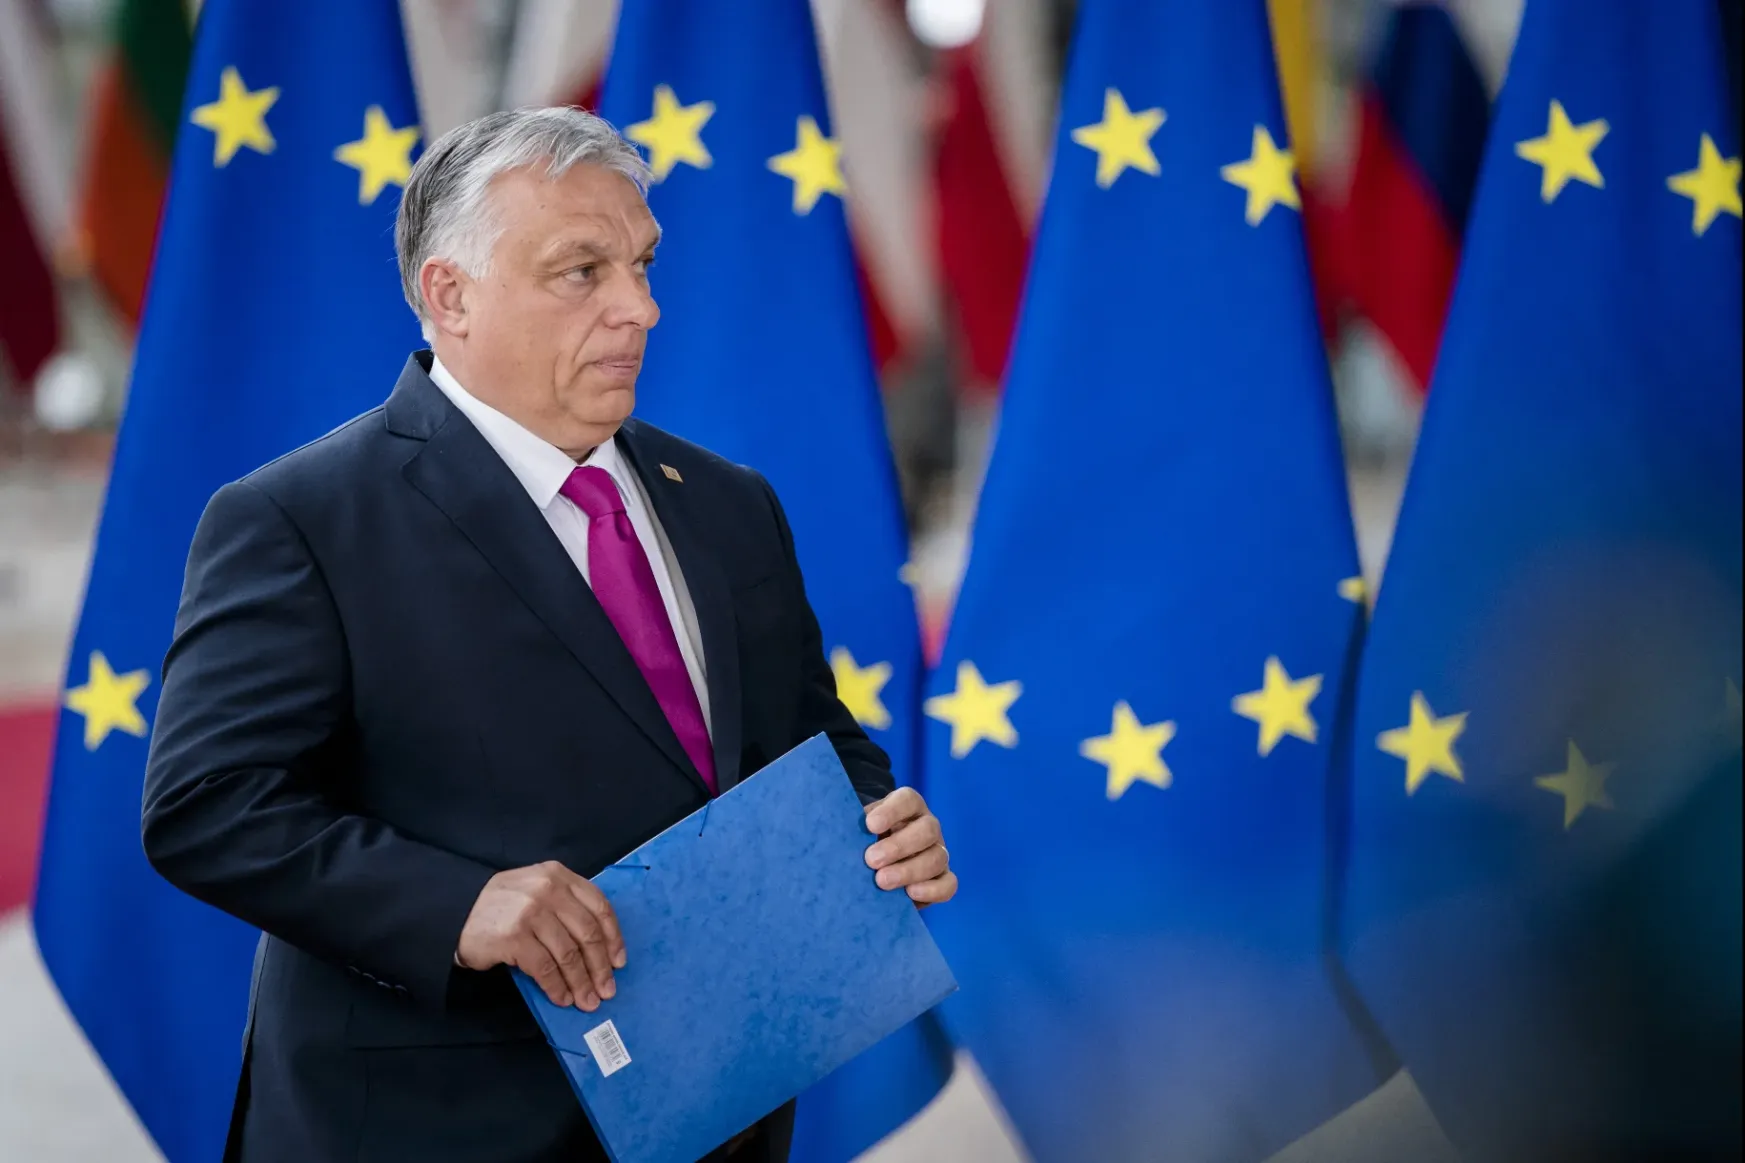 Egy utolsó hónapot kapott az Orbán-kormány a jogállamisági problémák érdemi kezelésére